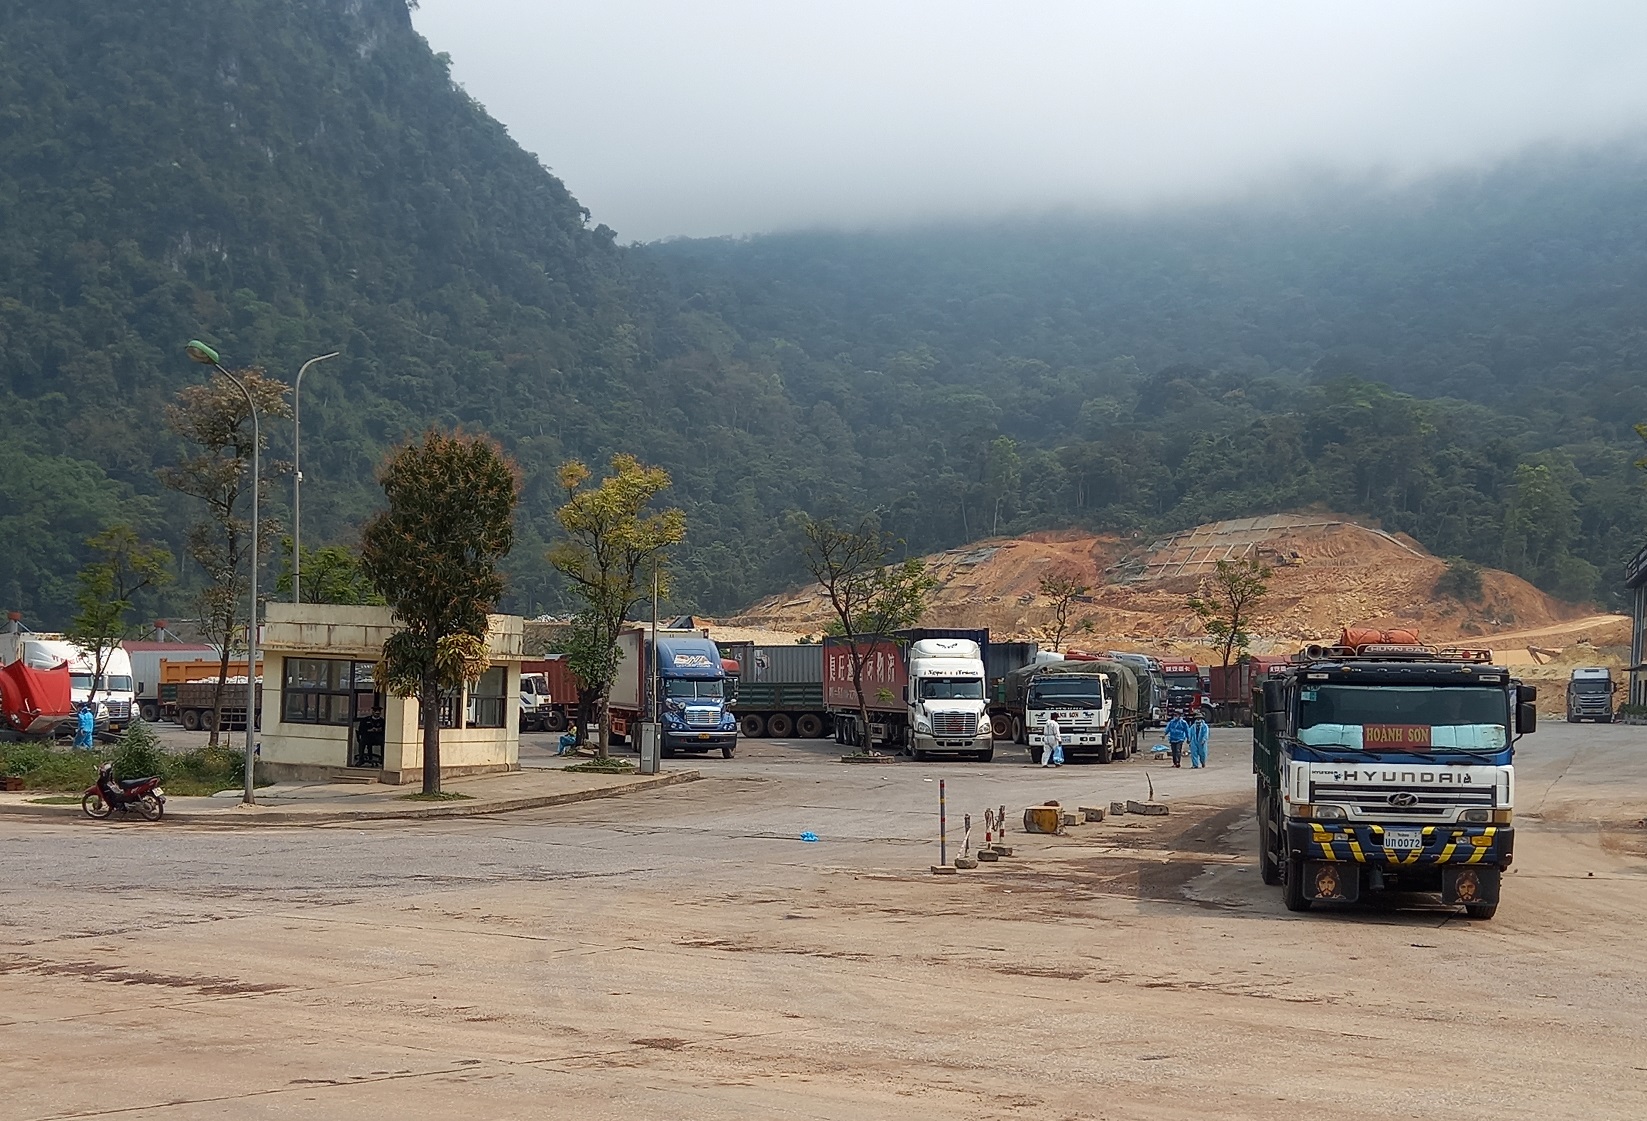 Lưu lượng xe và hàng hóa qua lại ở Cha Lo đang nằm dẫn đầu các cửa khẩu thông thương với Lào